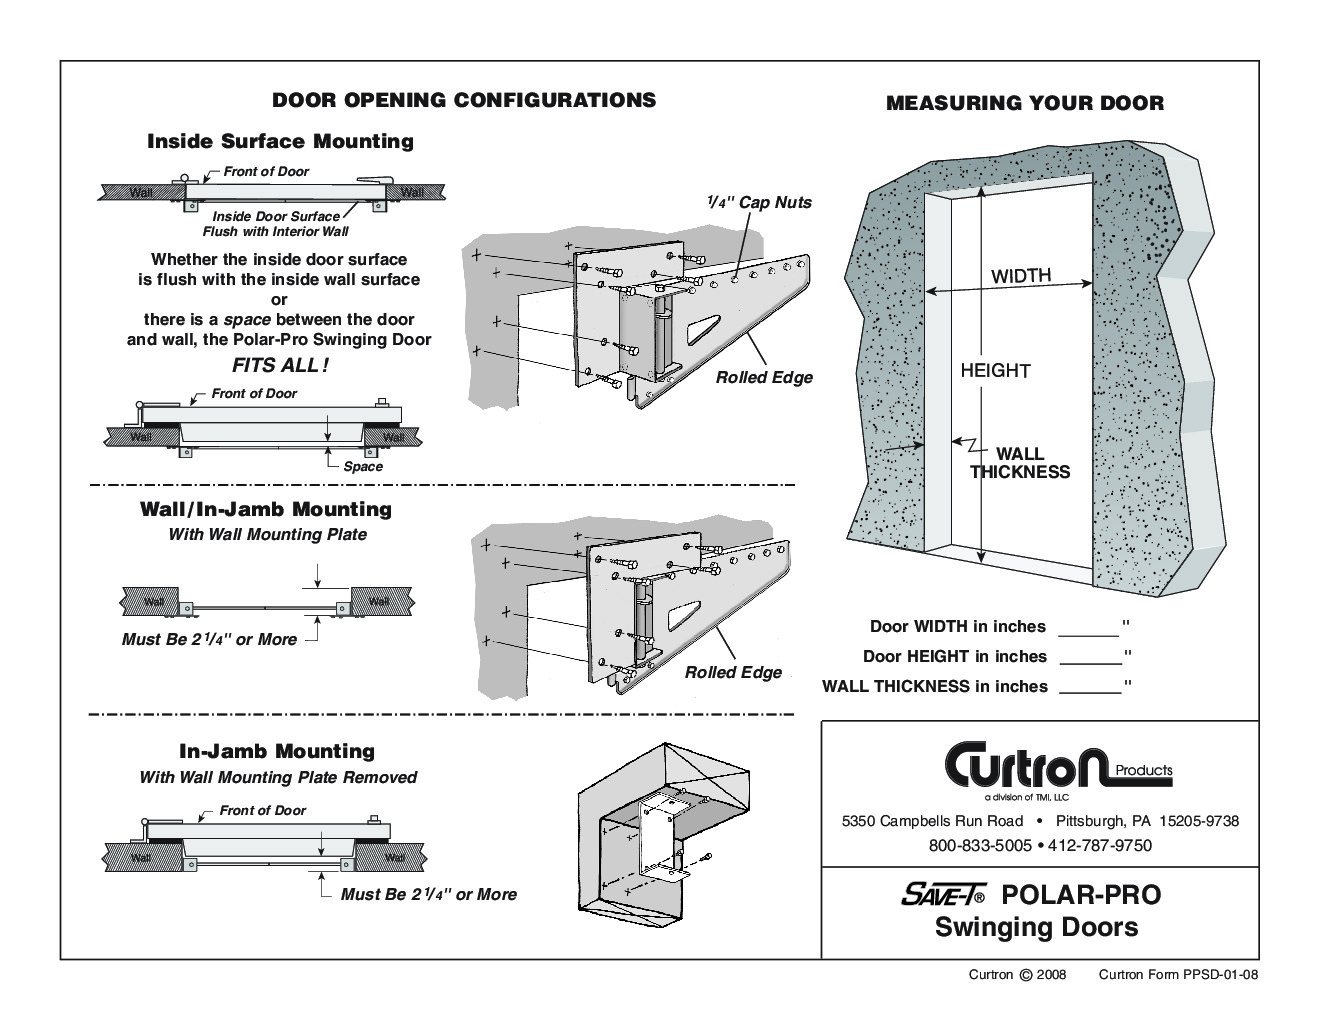 Curtron PP-C-080-3478 Flexible Cooler Freezer Door